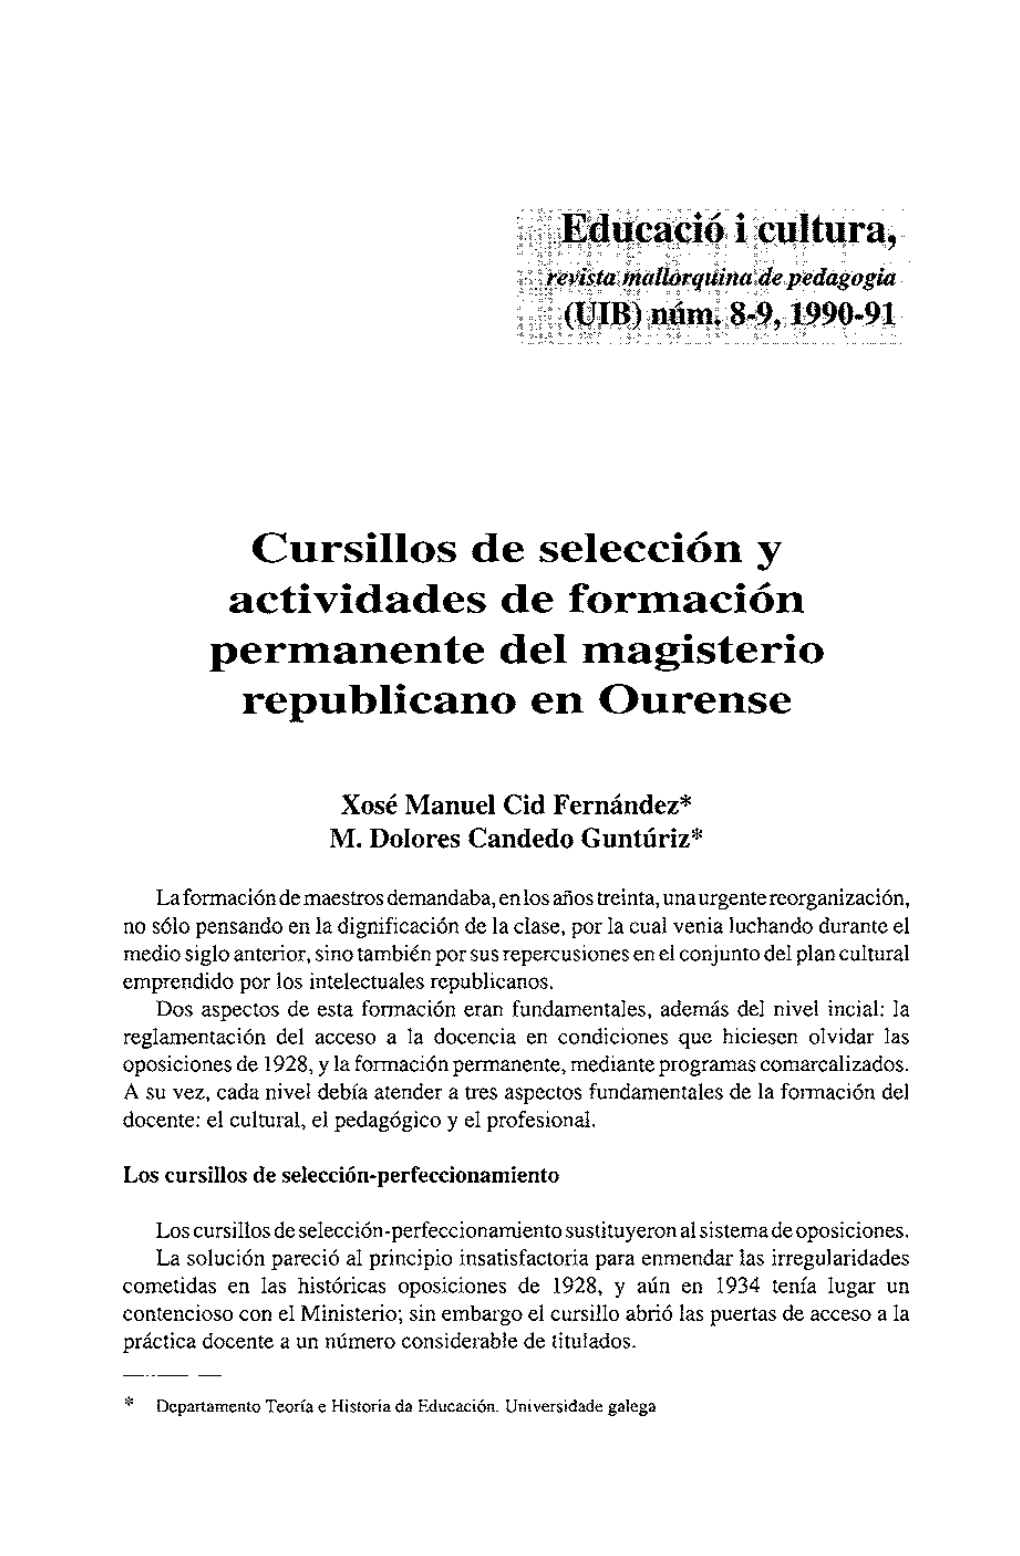 Cursillos De Selección Y Actividades De Formación Permanente Del Magisteri0 Republicano En Ourense